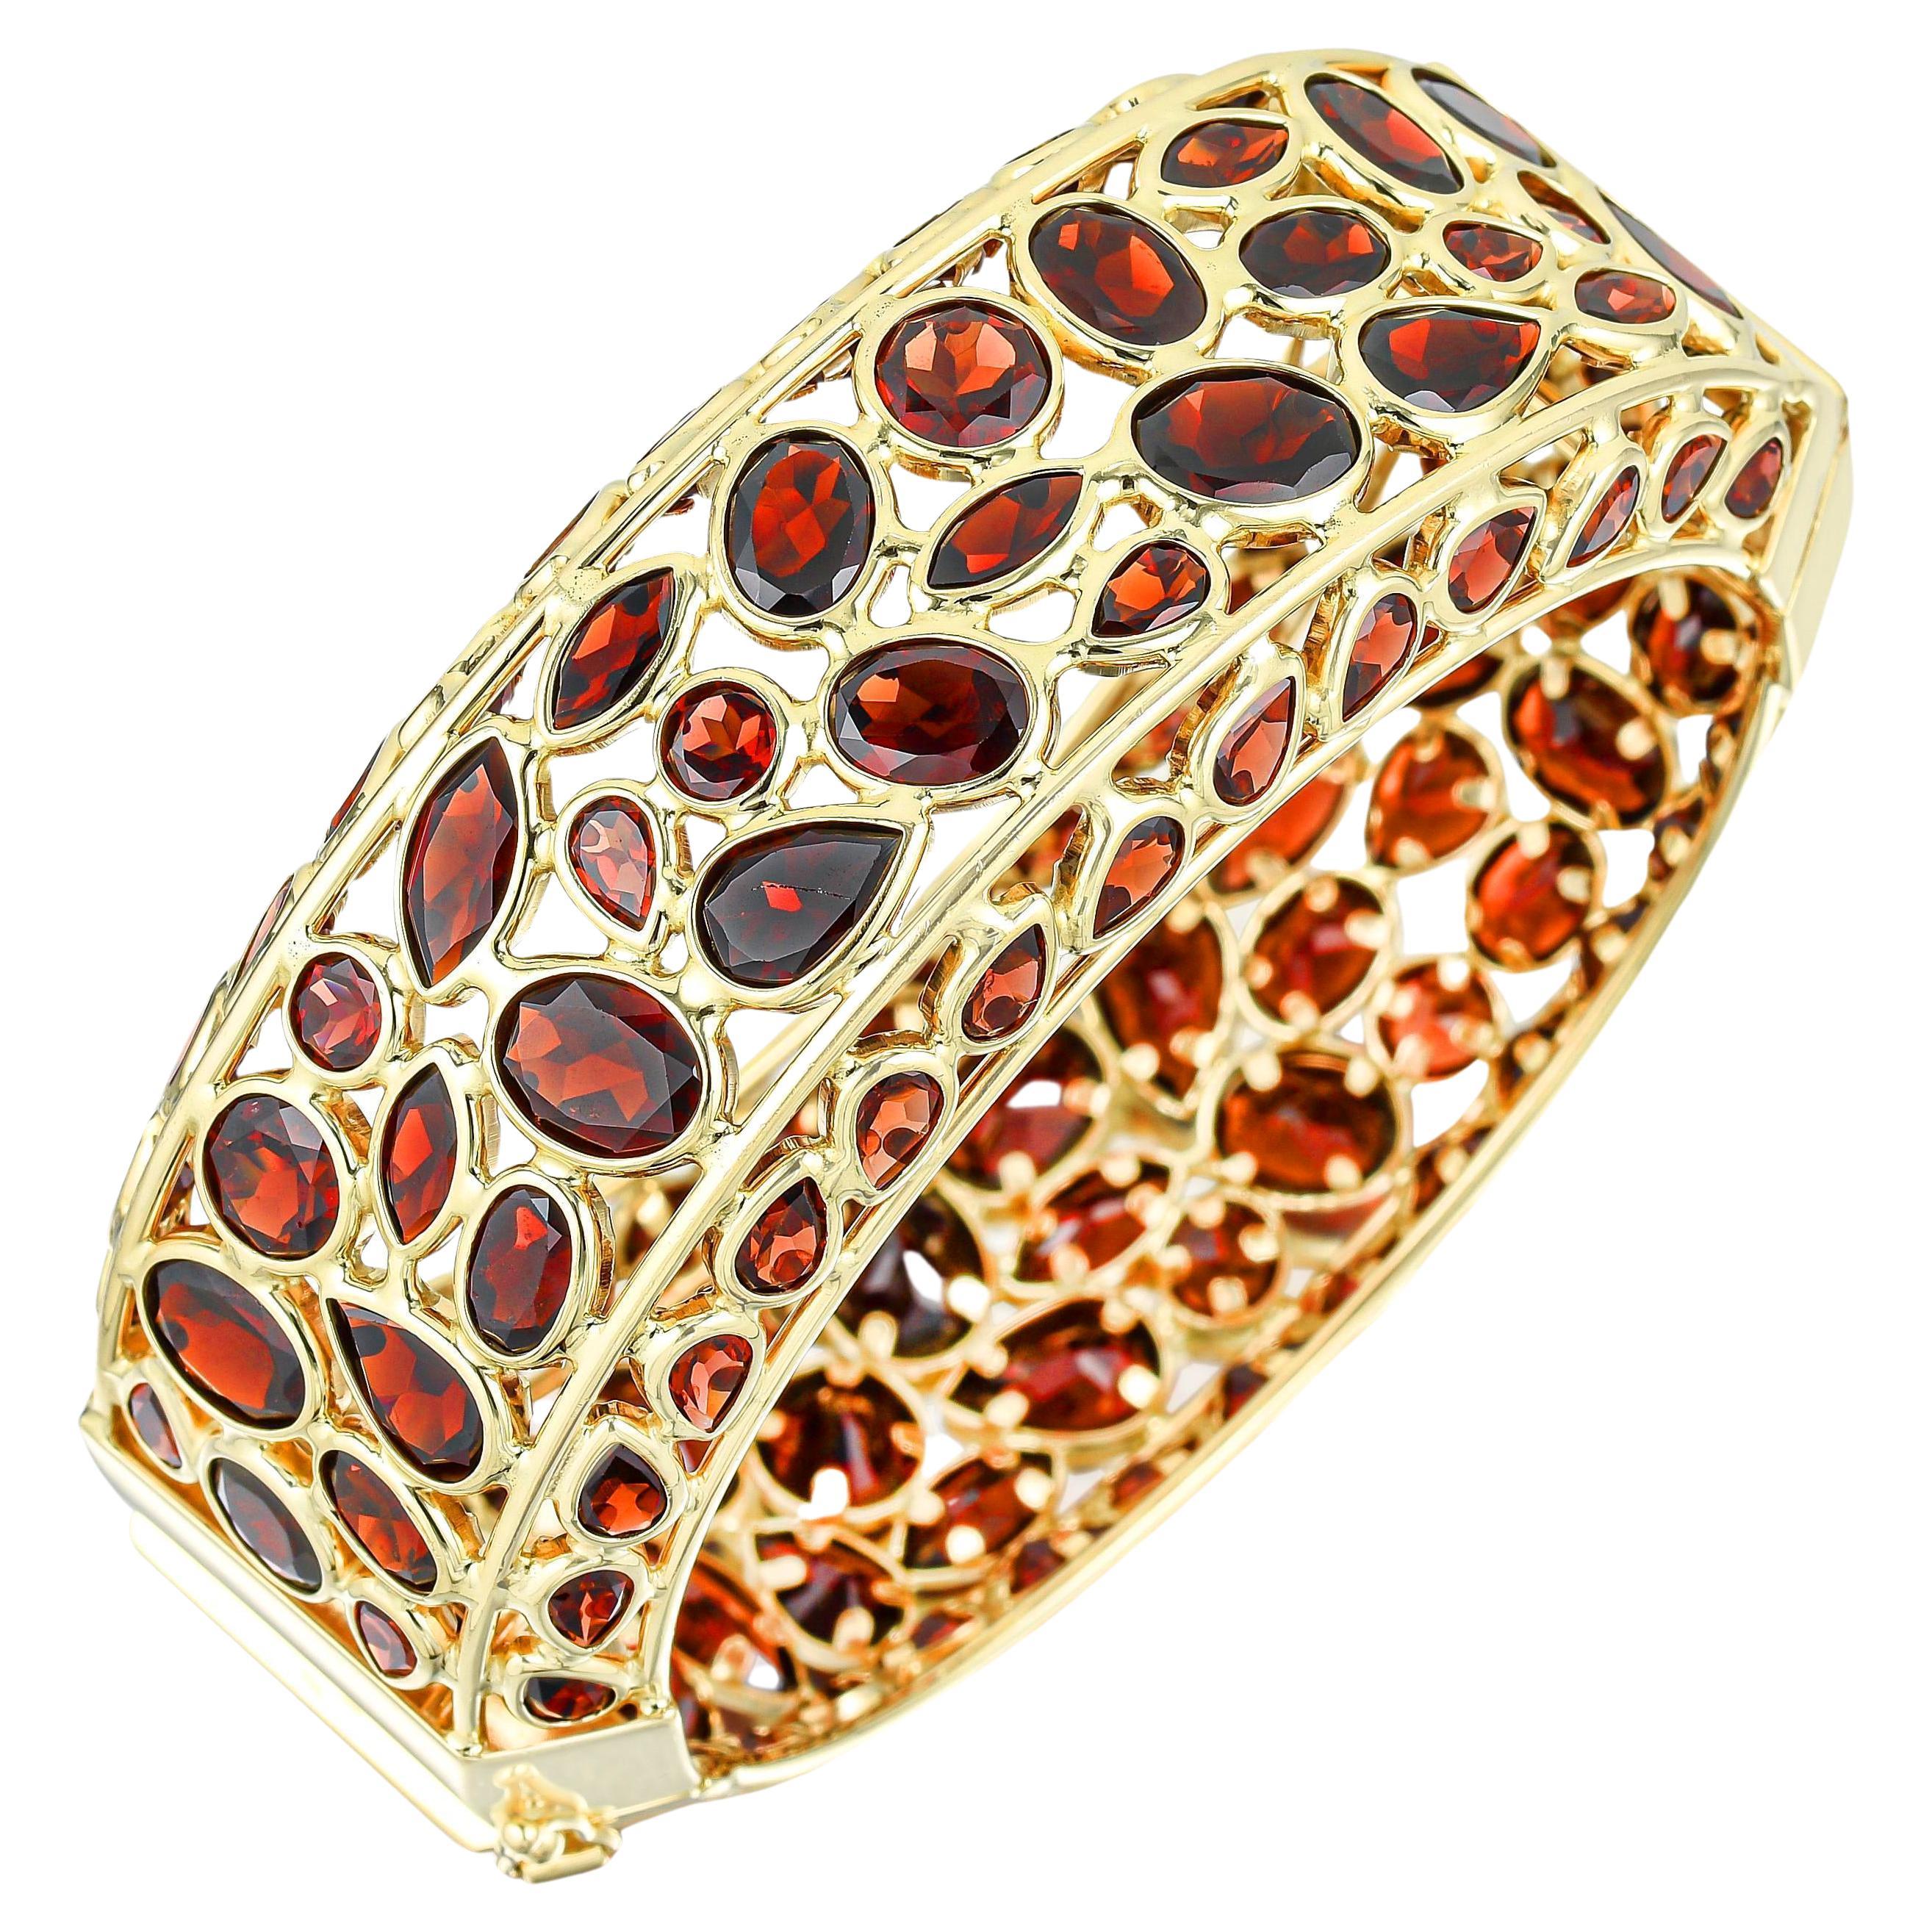 Il est accompagné d'une évaluation gemmologique par la GIA (GG/AJP).
Toutes les pierres précieuses sont naturelles
Grenats rouges = 100 carats
Coupe : Mixte
Métal : Or jaune 14K
Longueur du bracelet : 7 pouces
Le bracelet peut s'ouvrir sur un côté